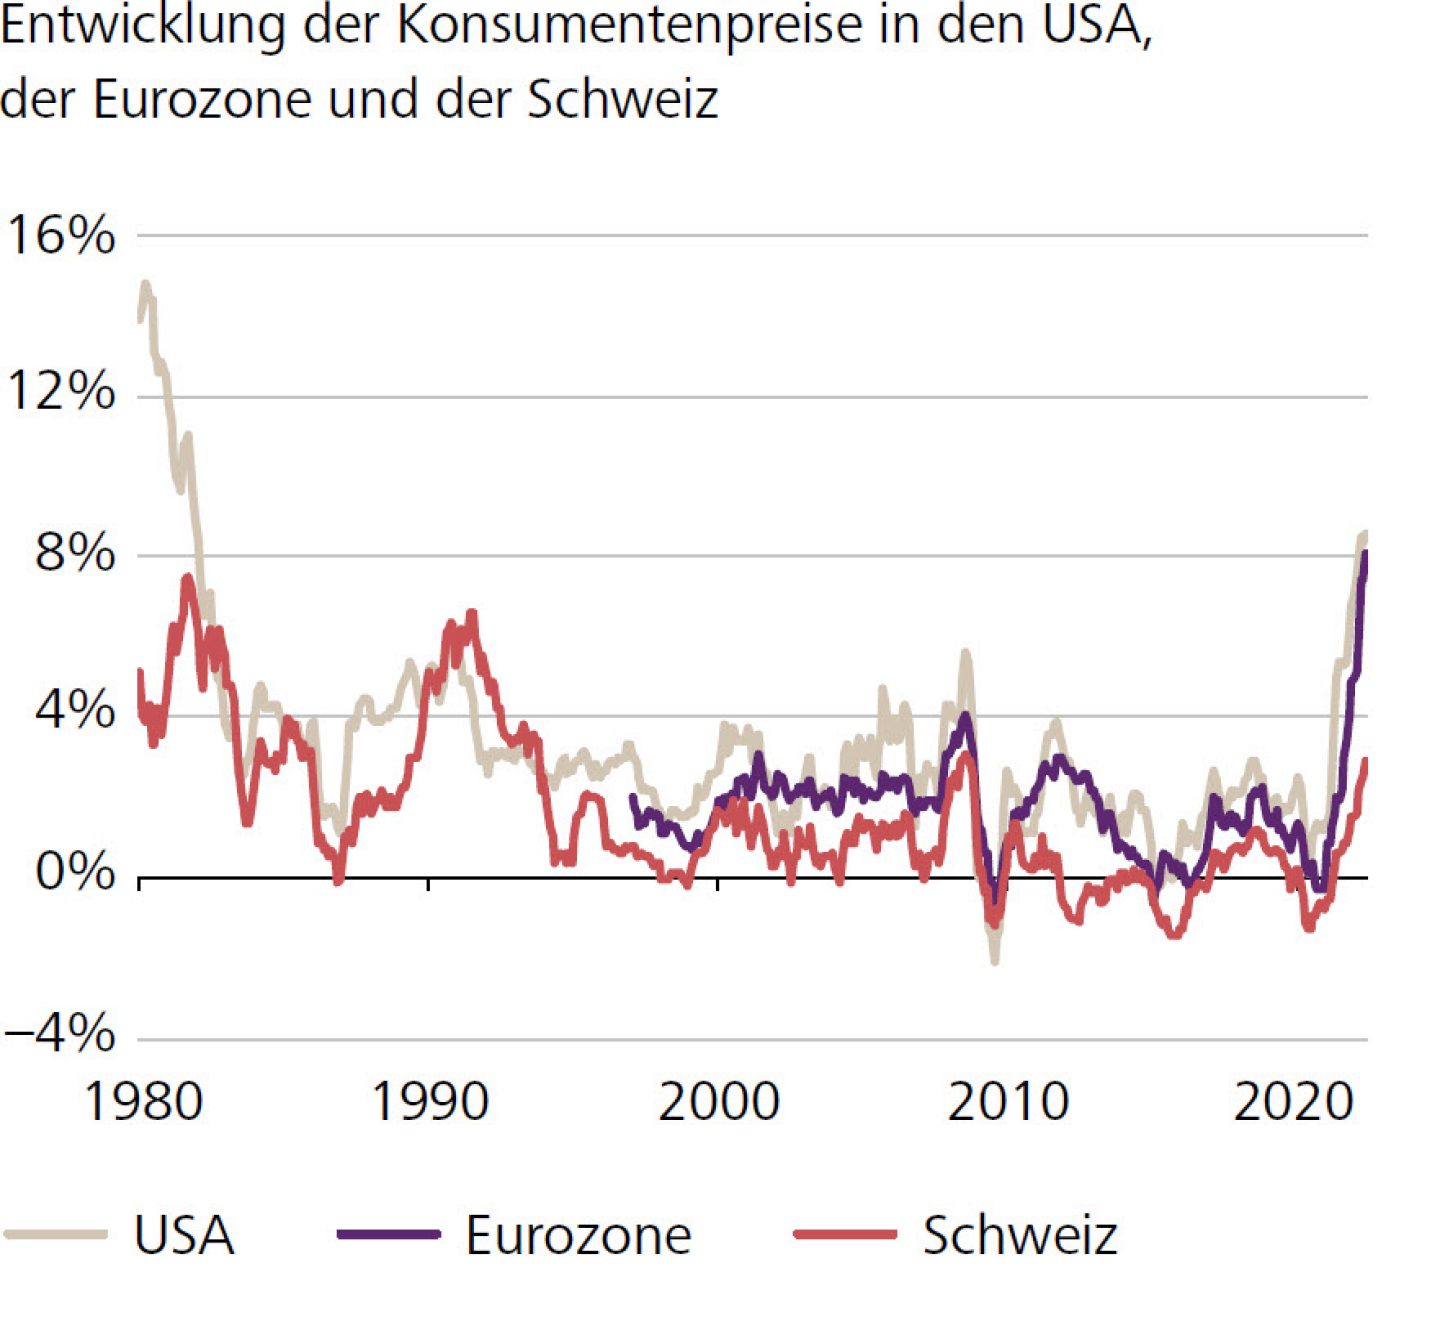 Entwicklung der Konsumentenpreise in den USA, der Eurozone und der Schweiz